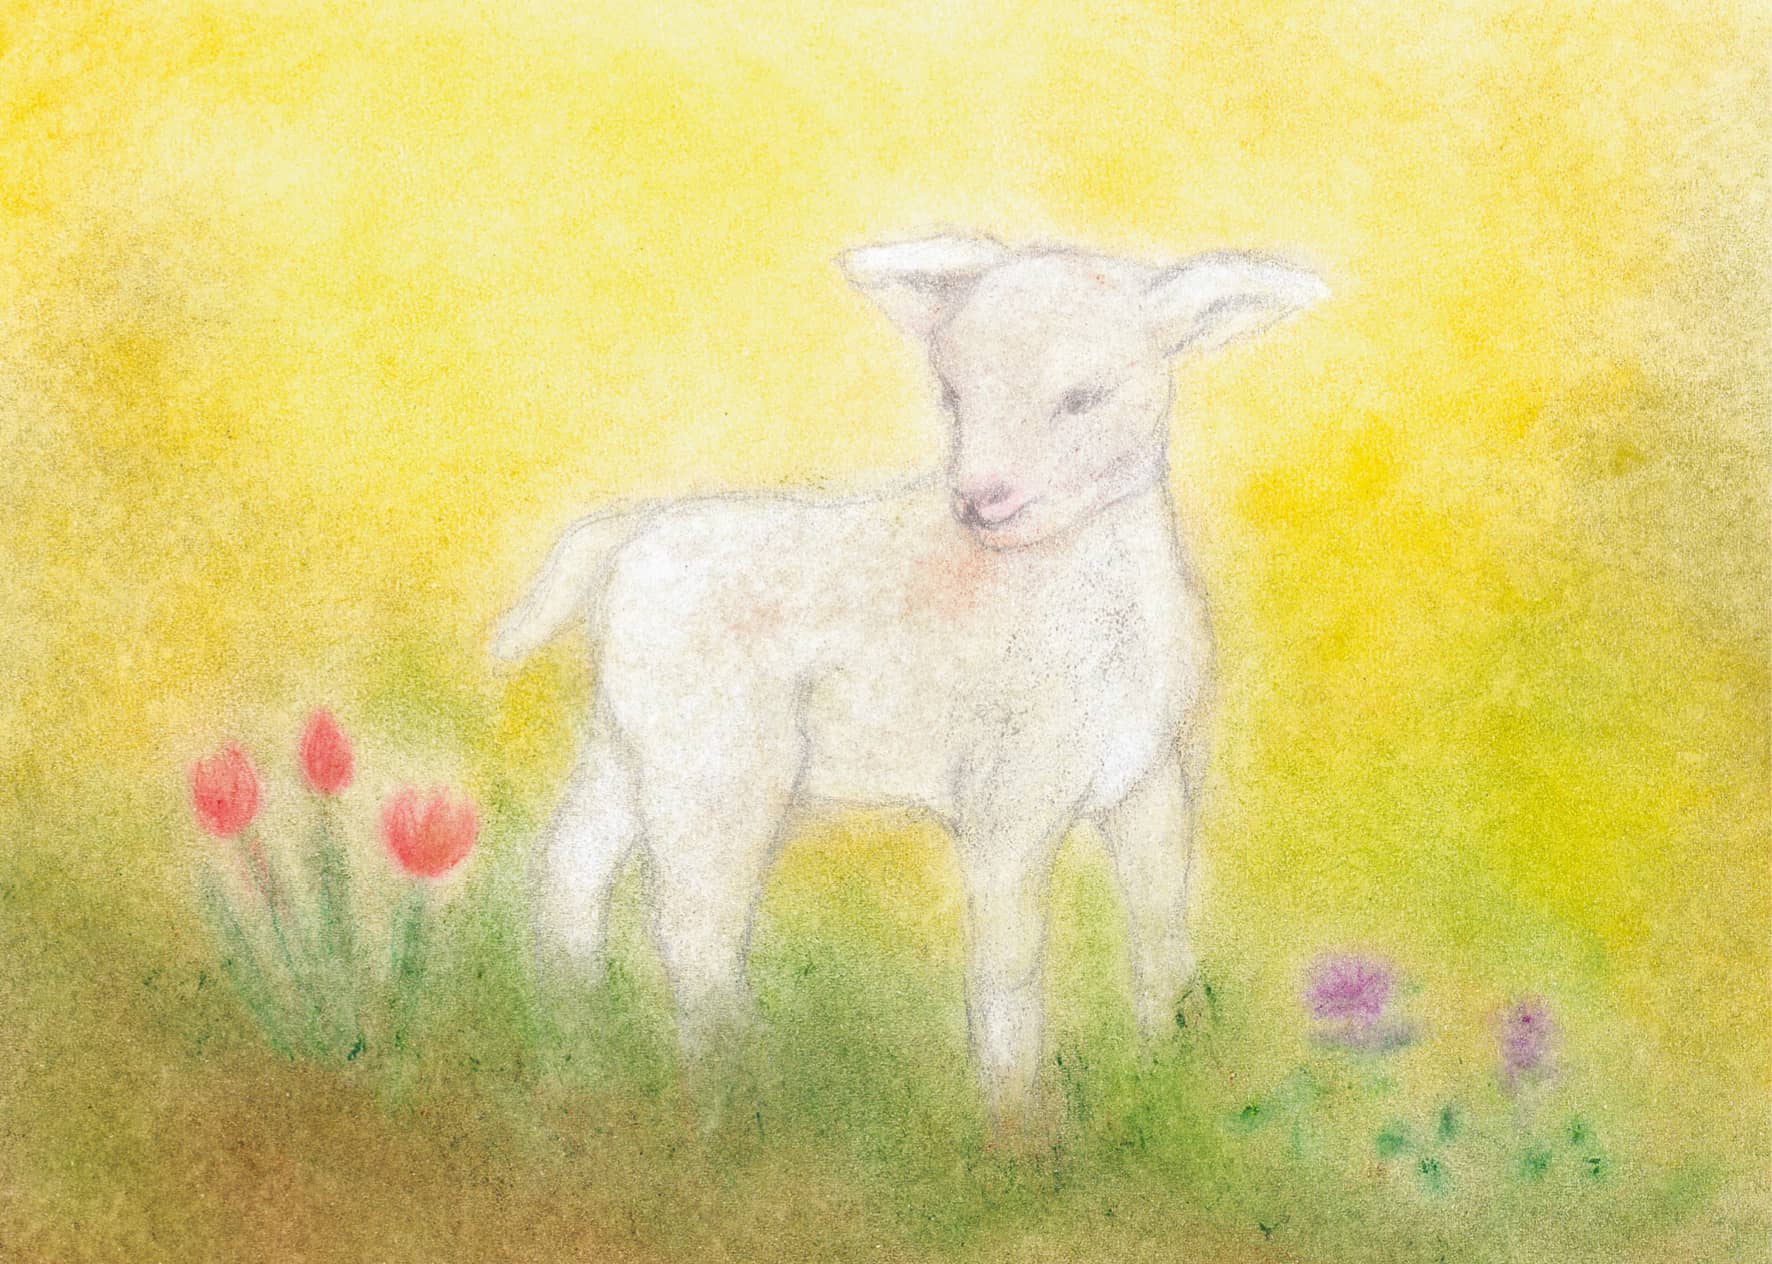 Ein junges Lamm auf gelblichem Grund, umgeben von Frühlingsblumen, kreiert mit Seccorell Farben für eine sanfte Textur.